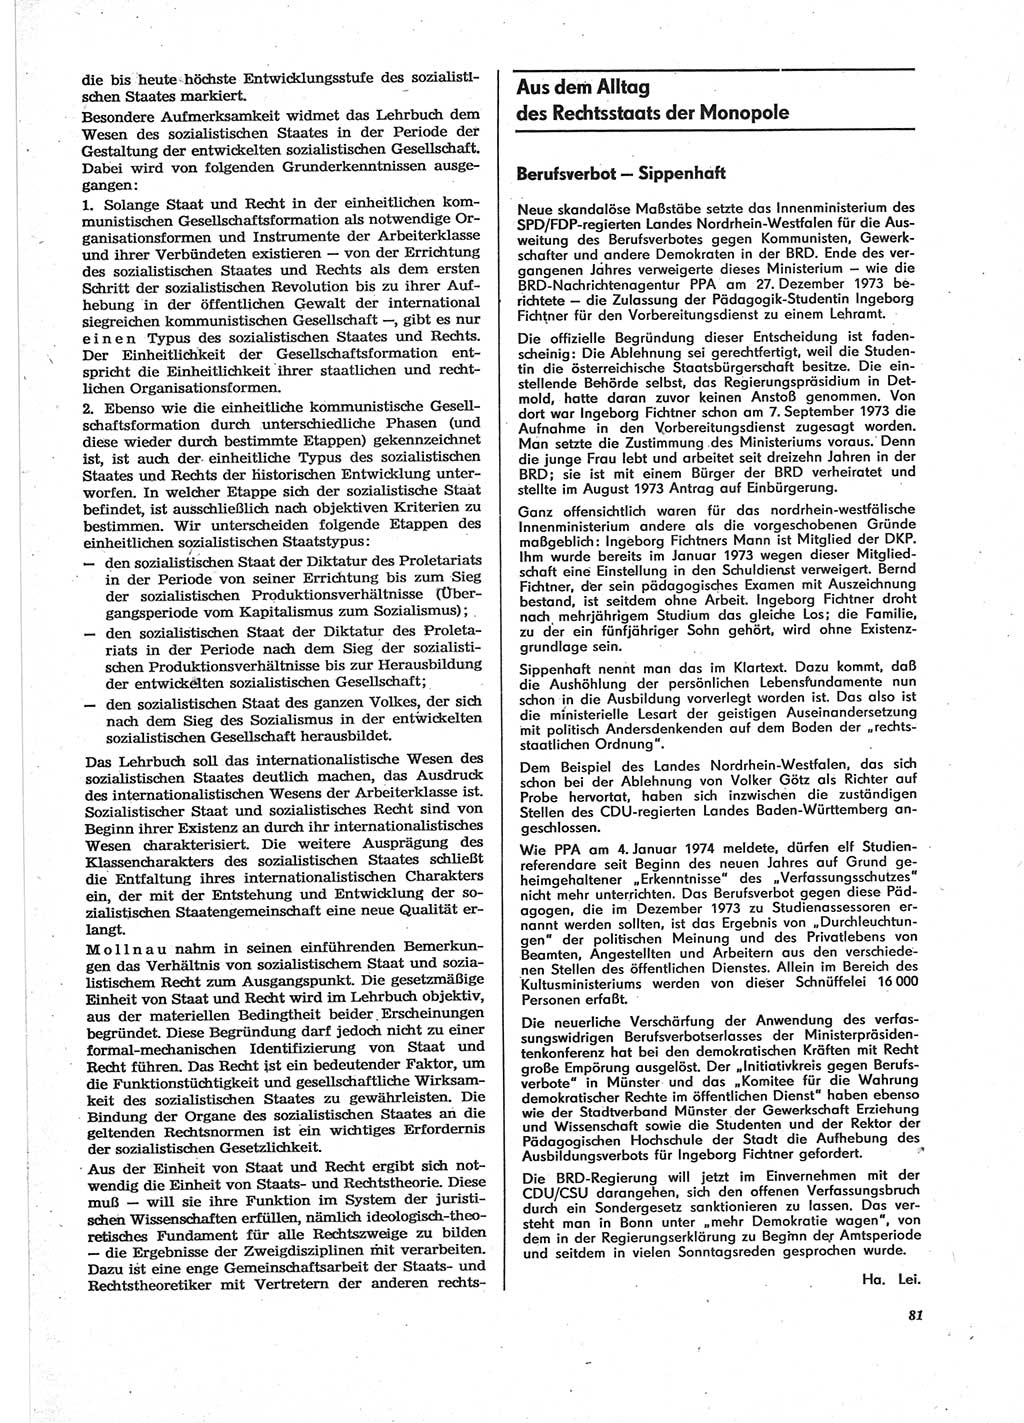 Neue Justiz (NJ), Zeitschrift für Recht und Rechtswissenschaft [Deutsche Demokratische Republik (DDR)], 28. Jahrgang 1974, Seite 81 (NJ DDR 1974, S. 81)